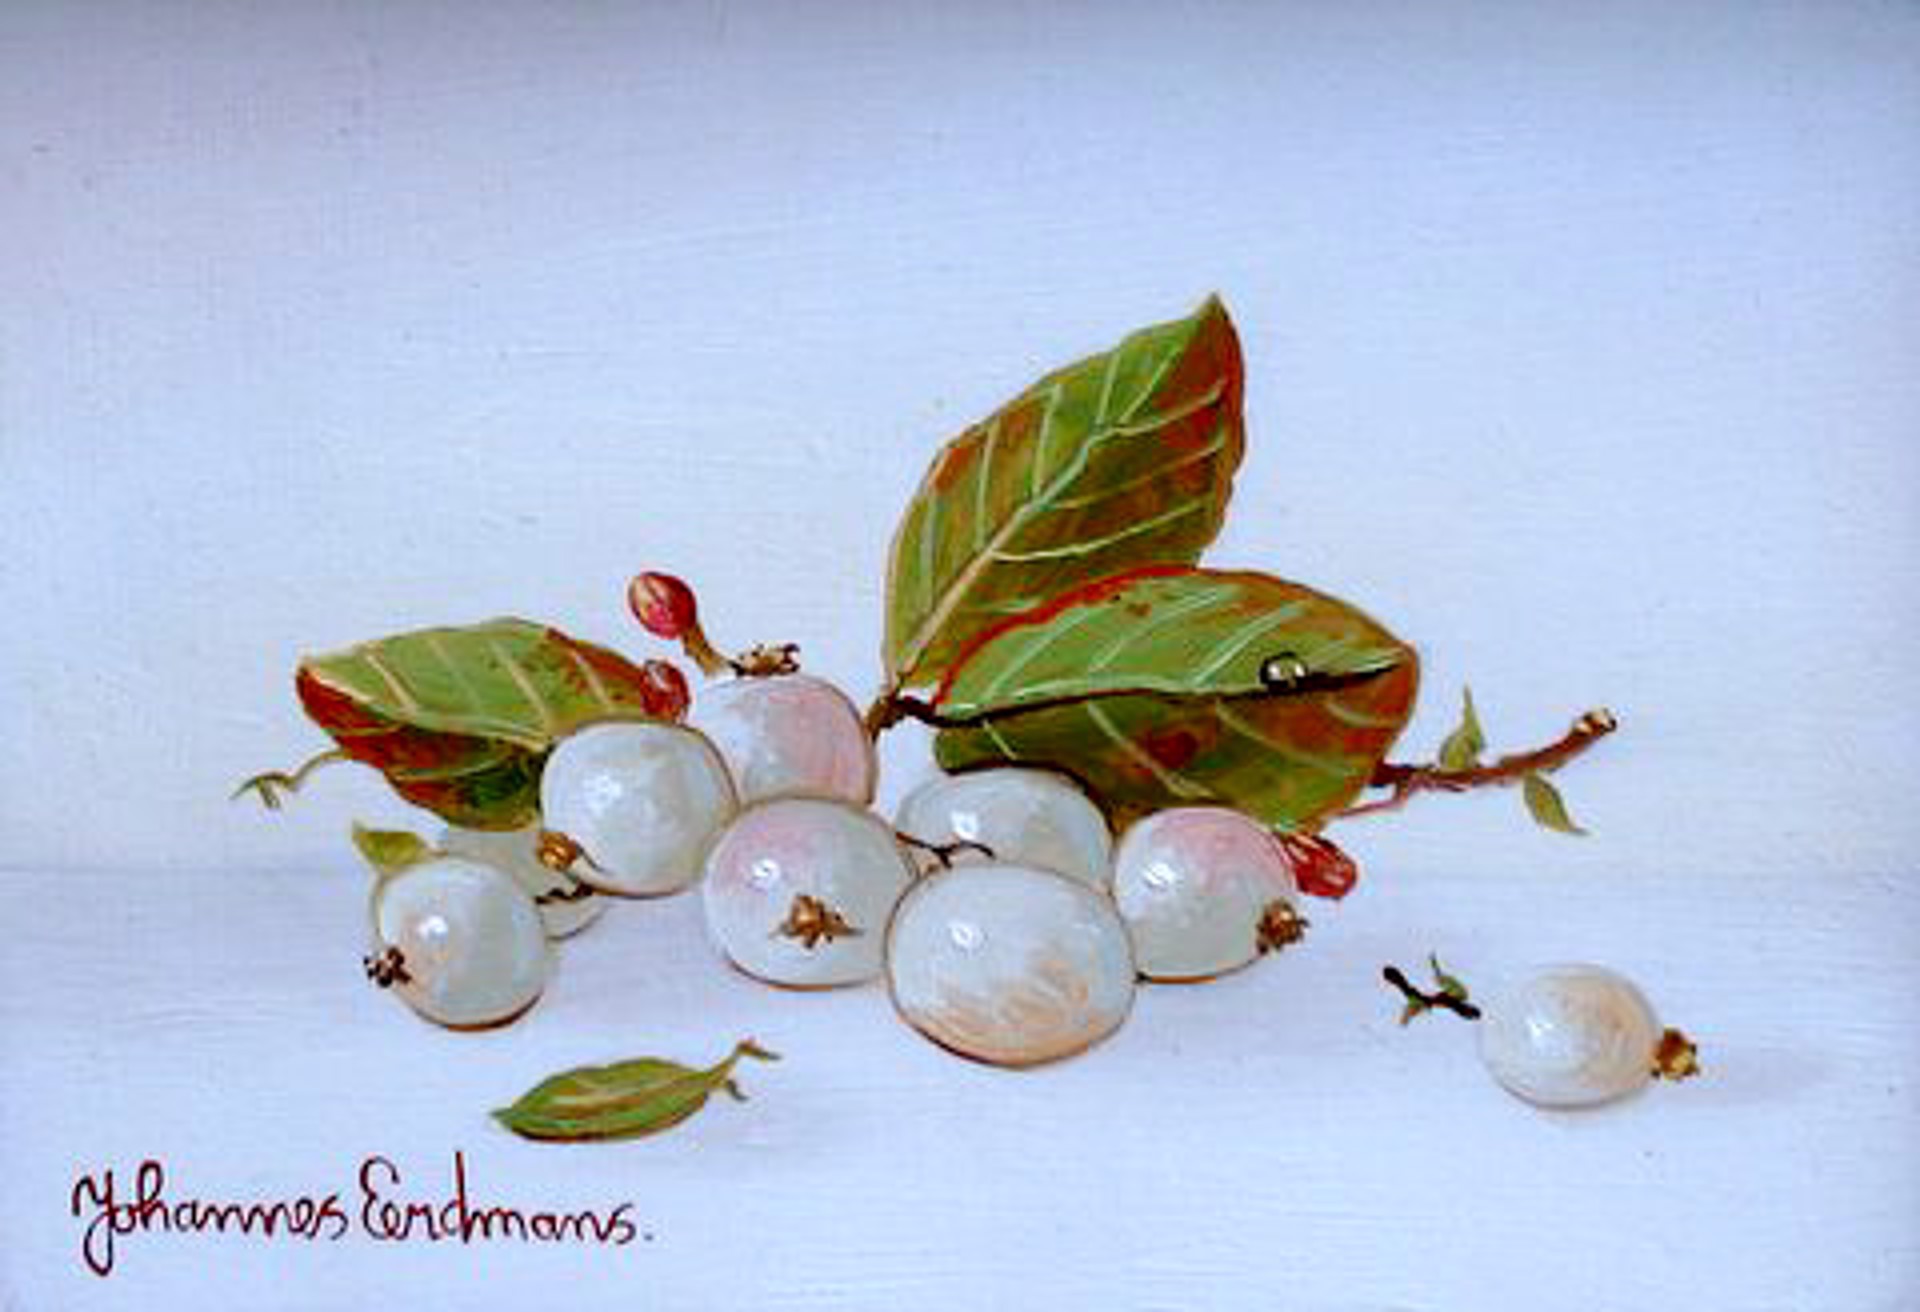 Snowberries by Johannes Eerdmans